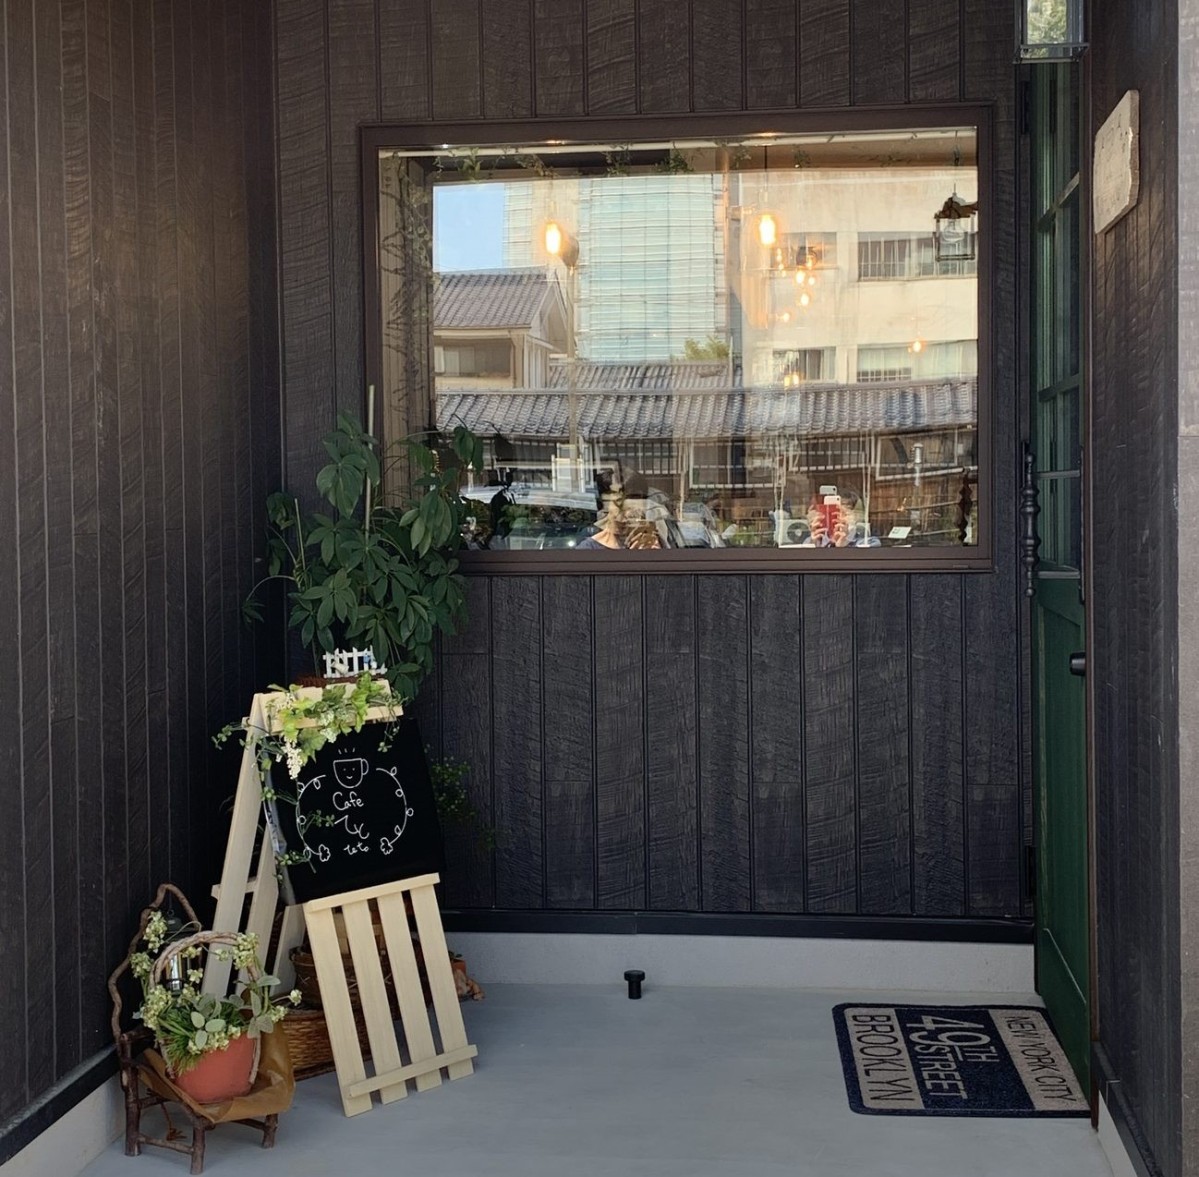 島根県松江市にオープンした『カフェてと』の外観